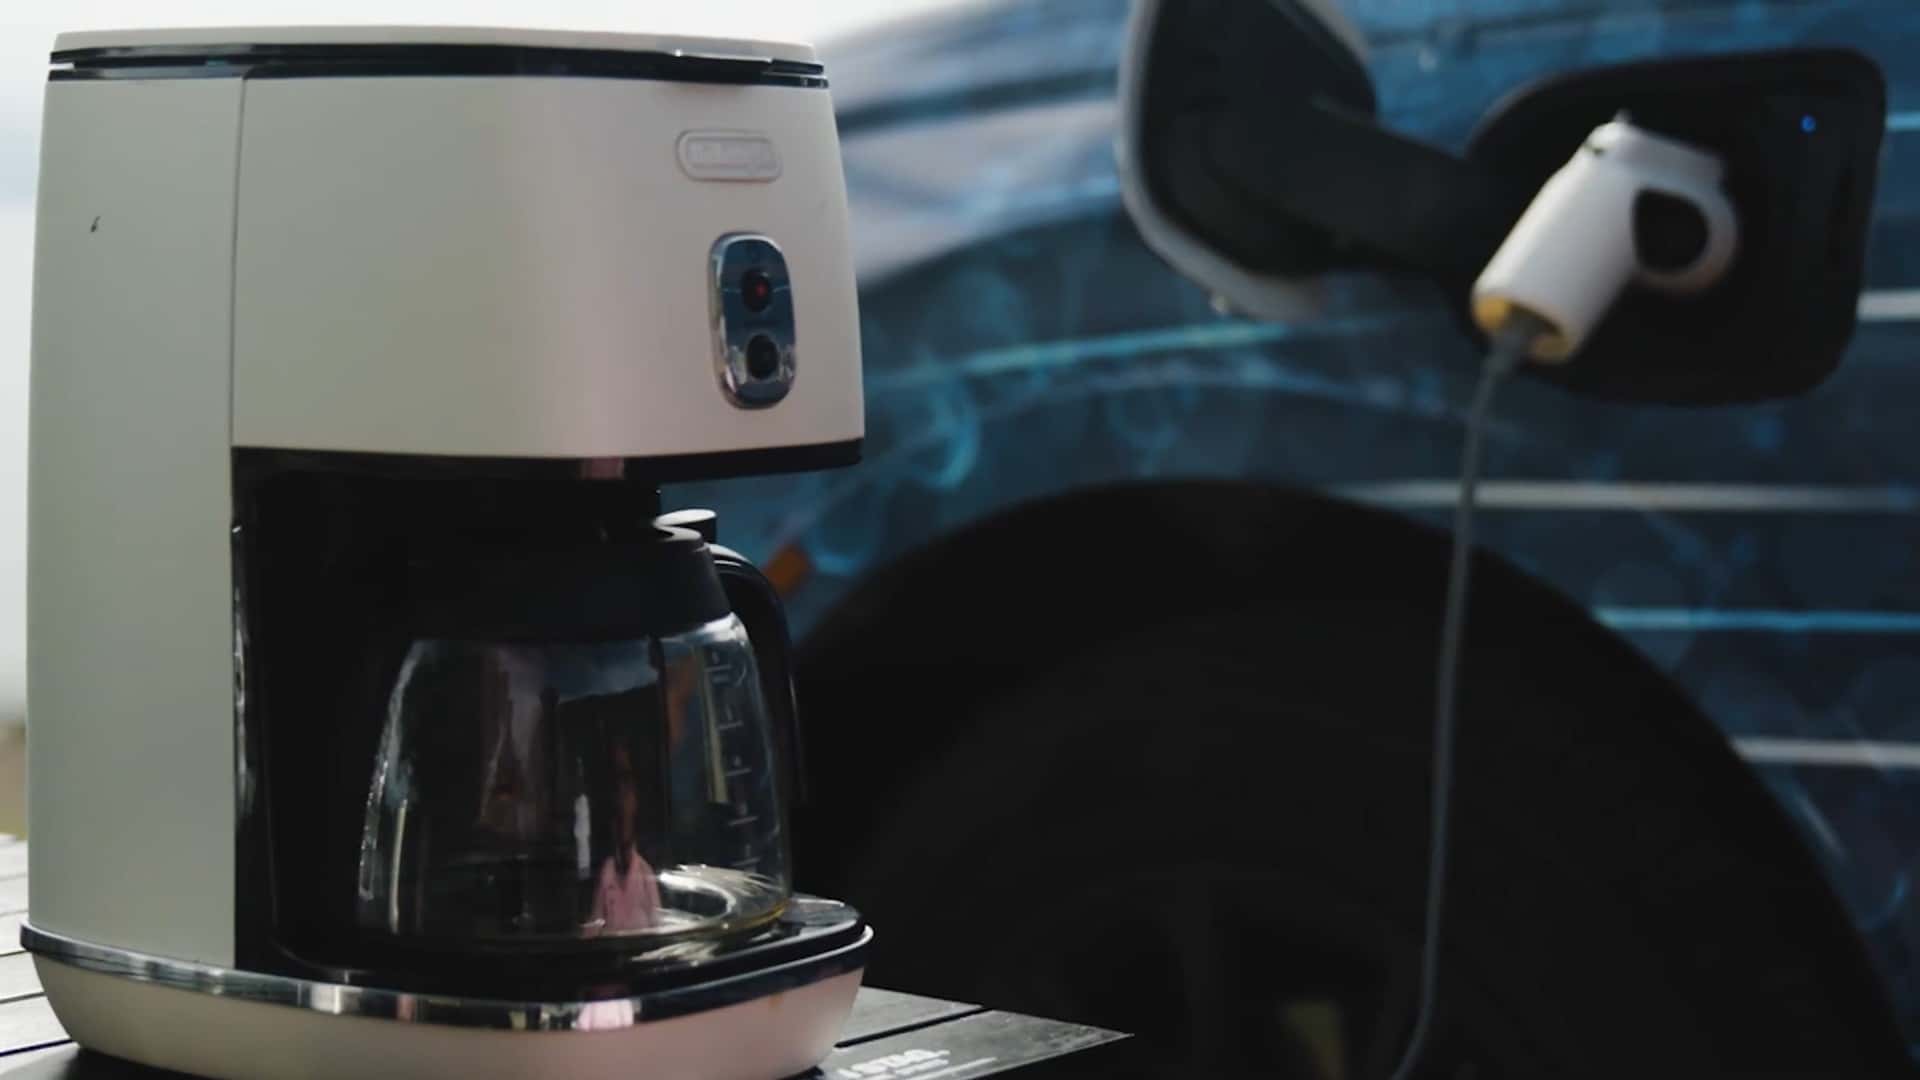 هوندا CR-V هیدروژن مدل 2025 به قهوه ساز شما نیرو می دهد